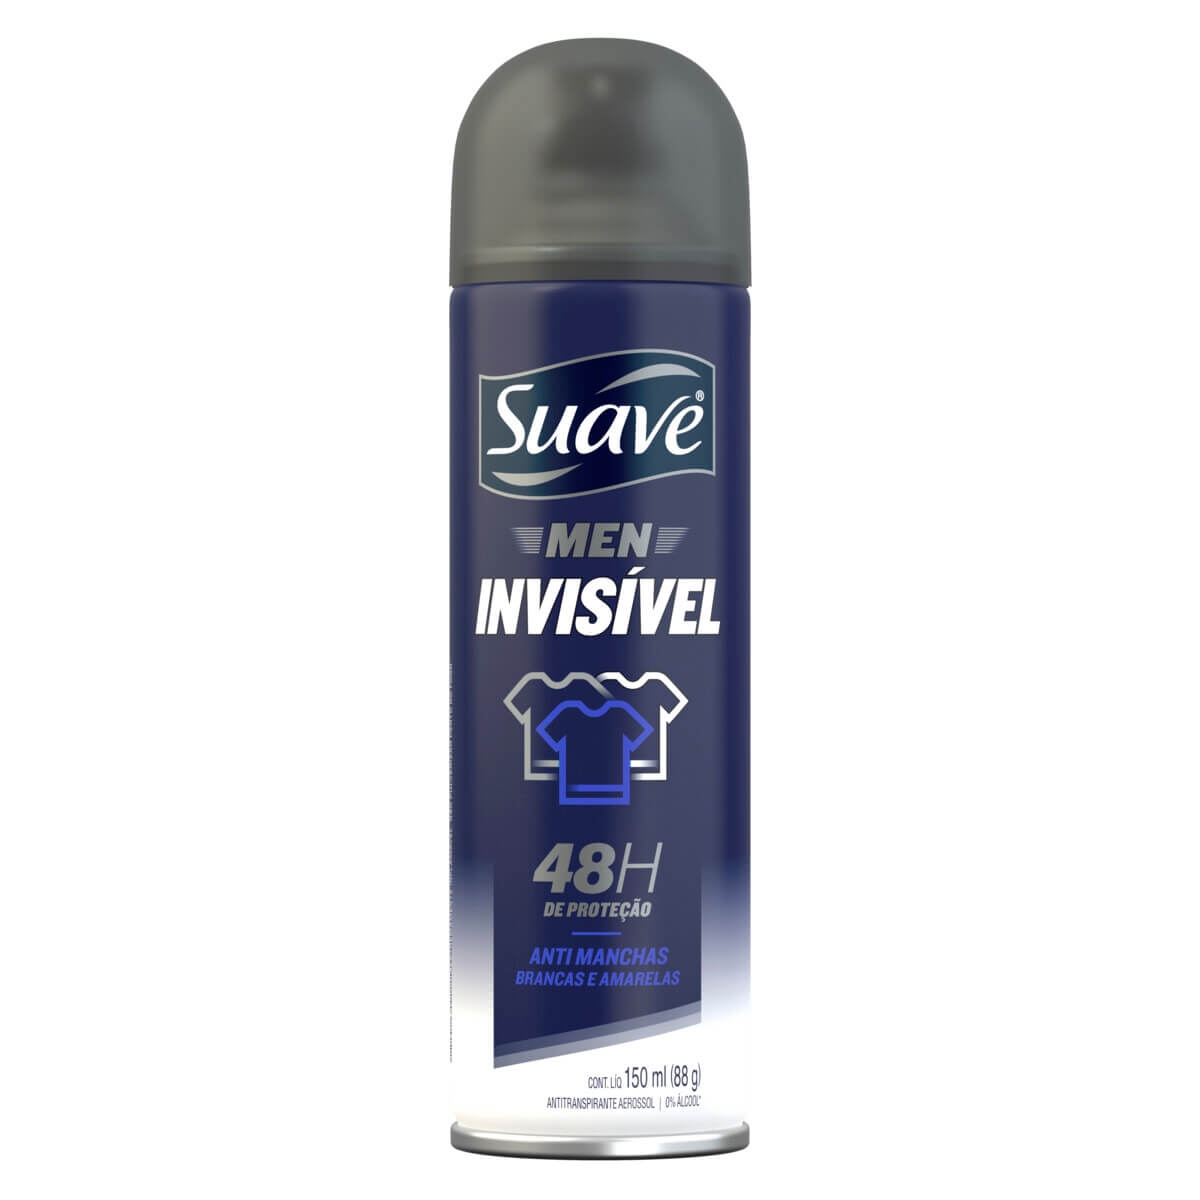 Desodorante Suave Men Invisível Aerosol Antitranspirante 48h de proteção com 150ml 150ml